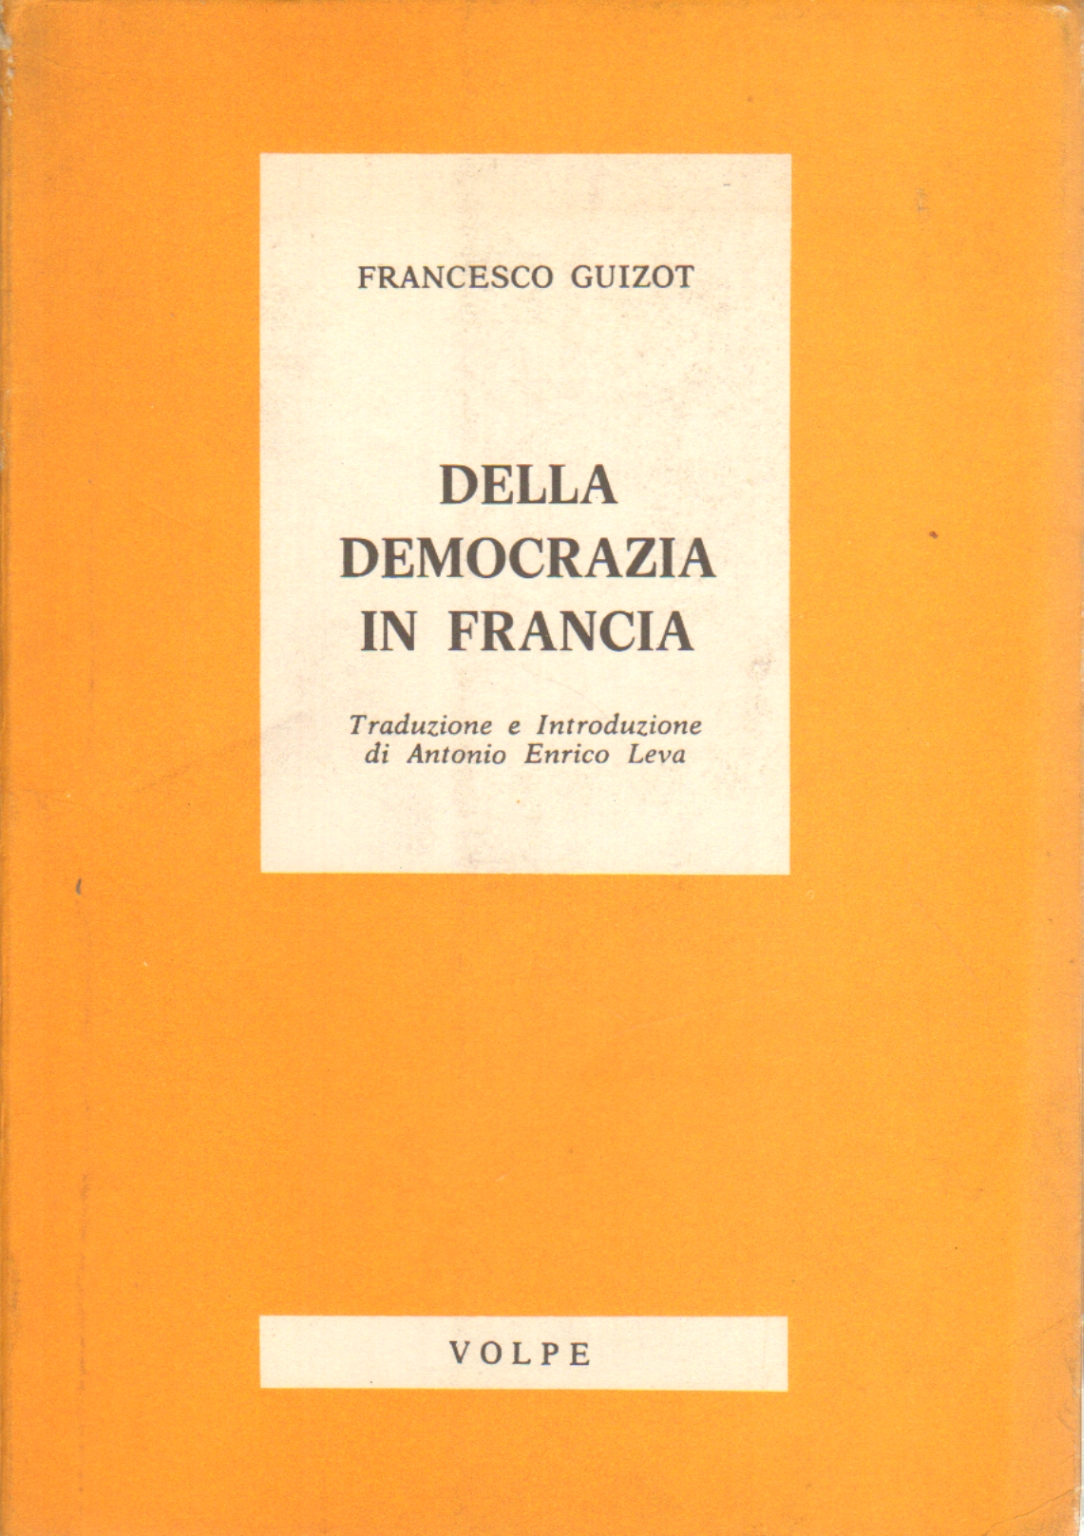 Della democrazia in Francia, Francesco Guizot